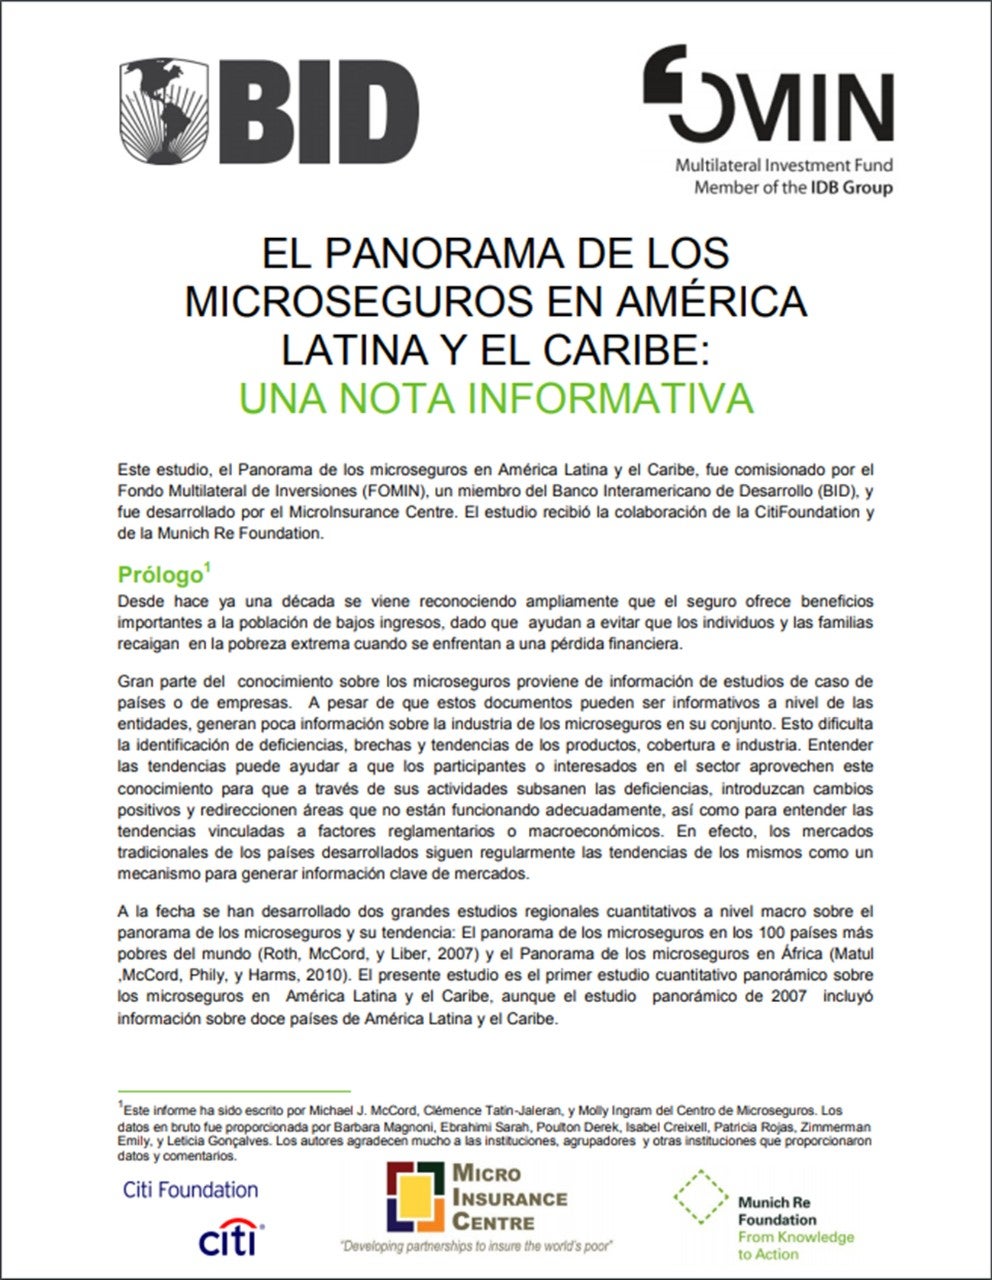 El panorama de los microseguros en América Latina y es Caribe